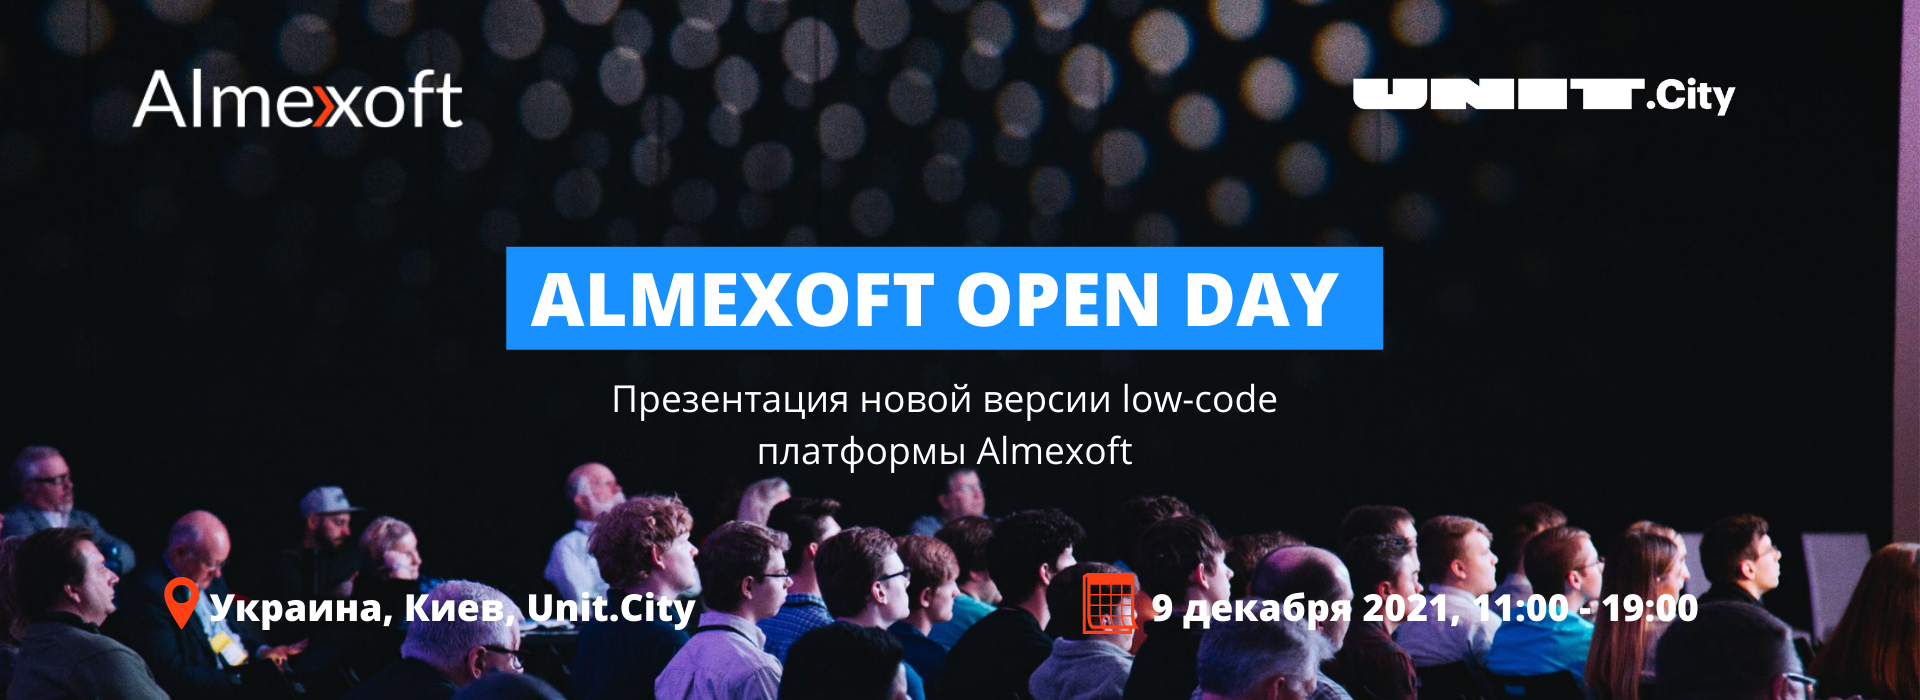 Almexoft Open Day